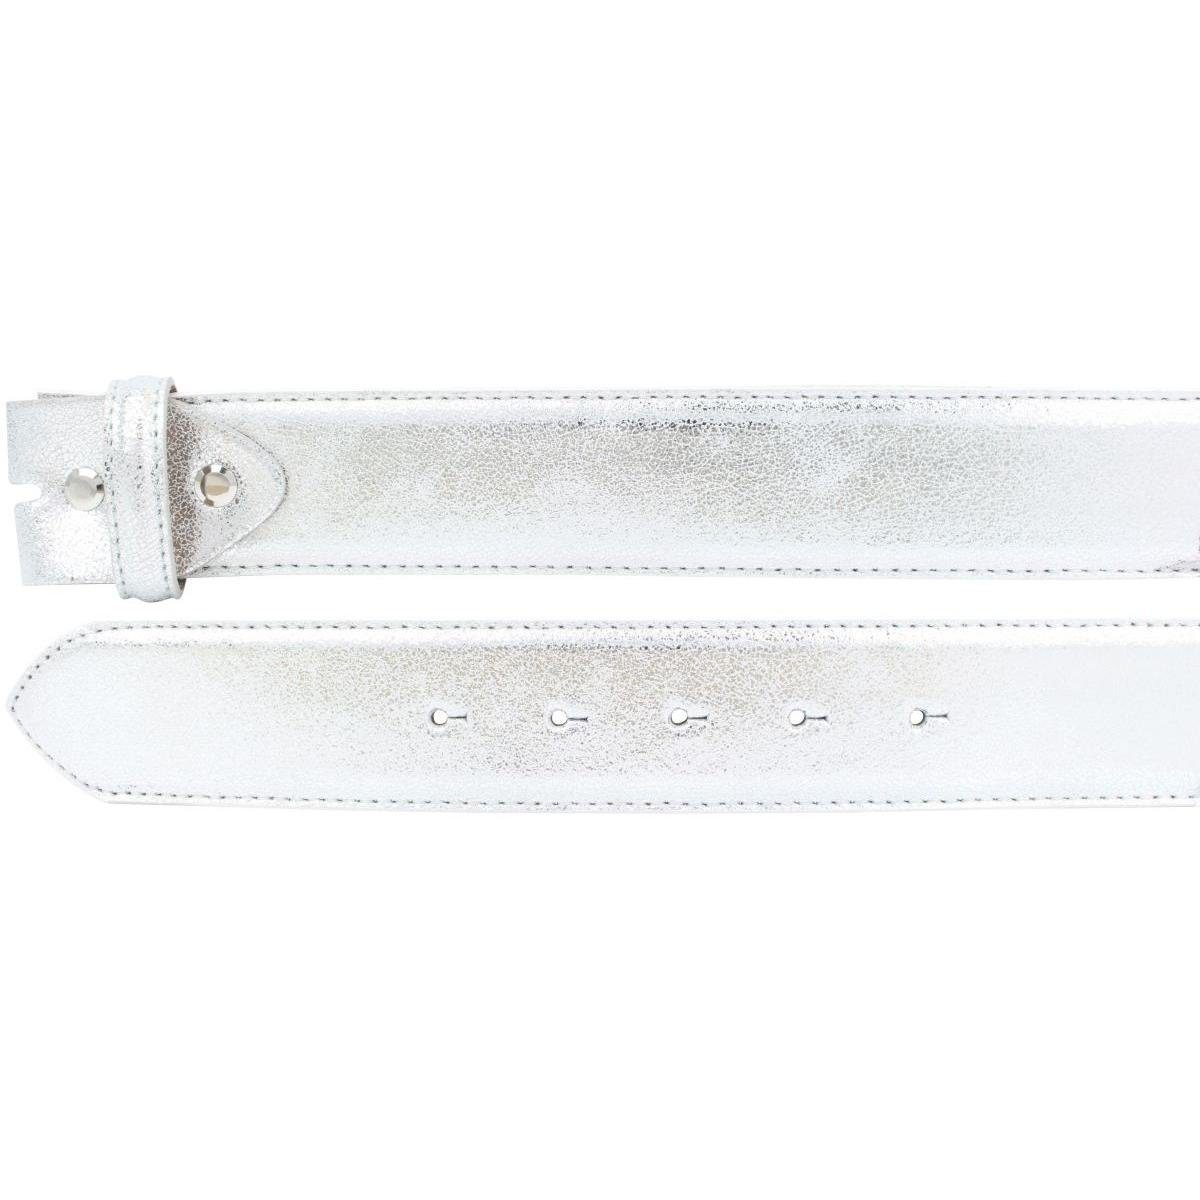 Gürtel BELTINGER 4 cm Ledergürtel Schnalle ohne Echt Meta Hochwertiger Metall-Optik - Silber Leder